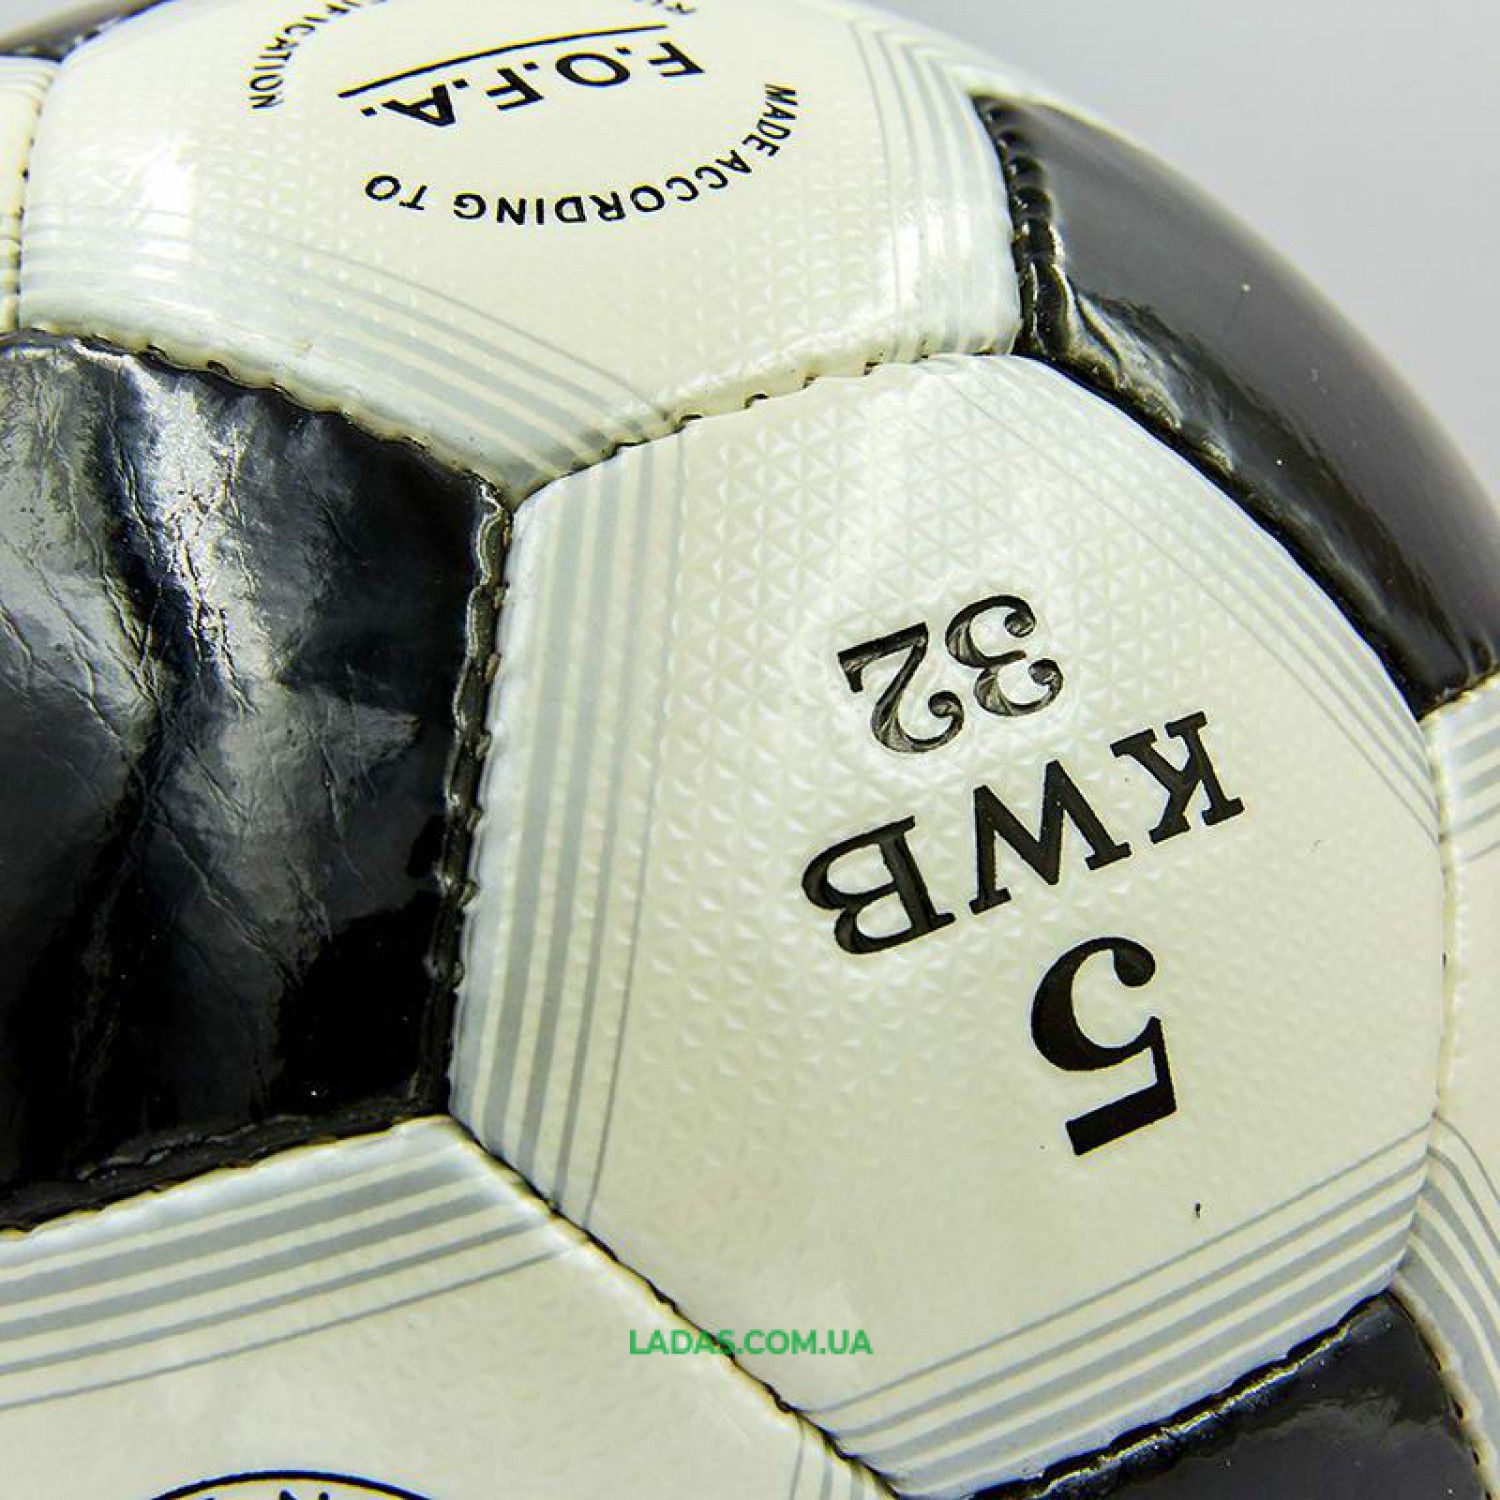 Мяч футбольный №5 PU ламинированный OFFICIAL (бело-черный, сшит вручную)